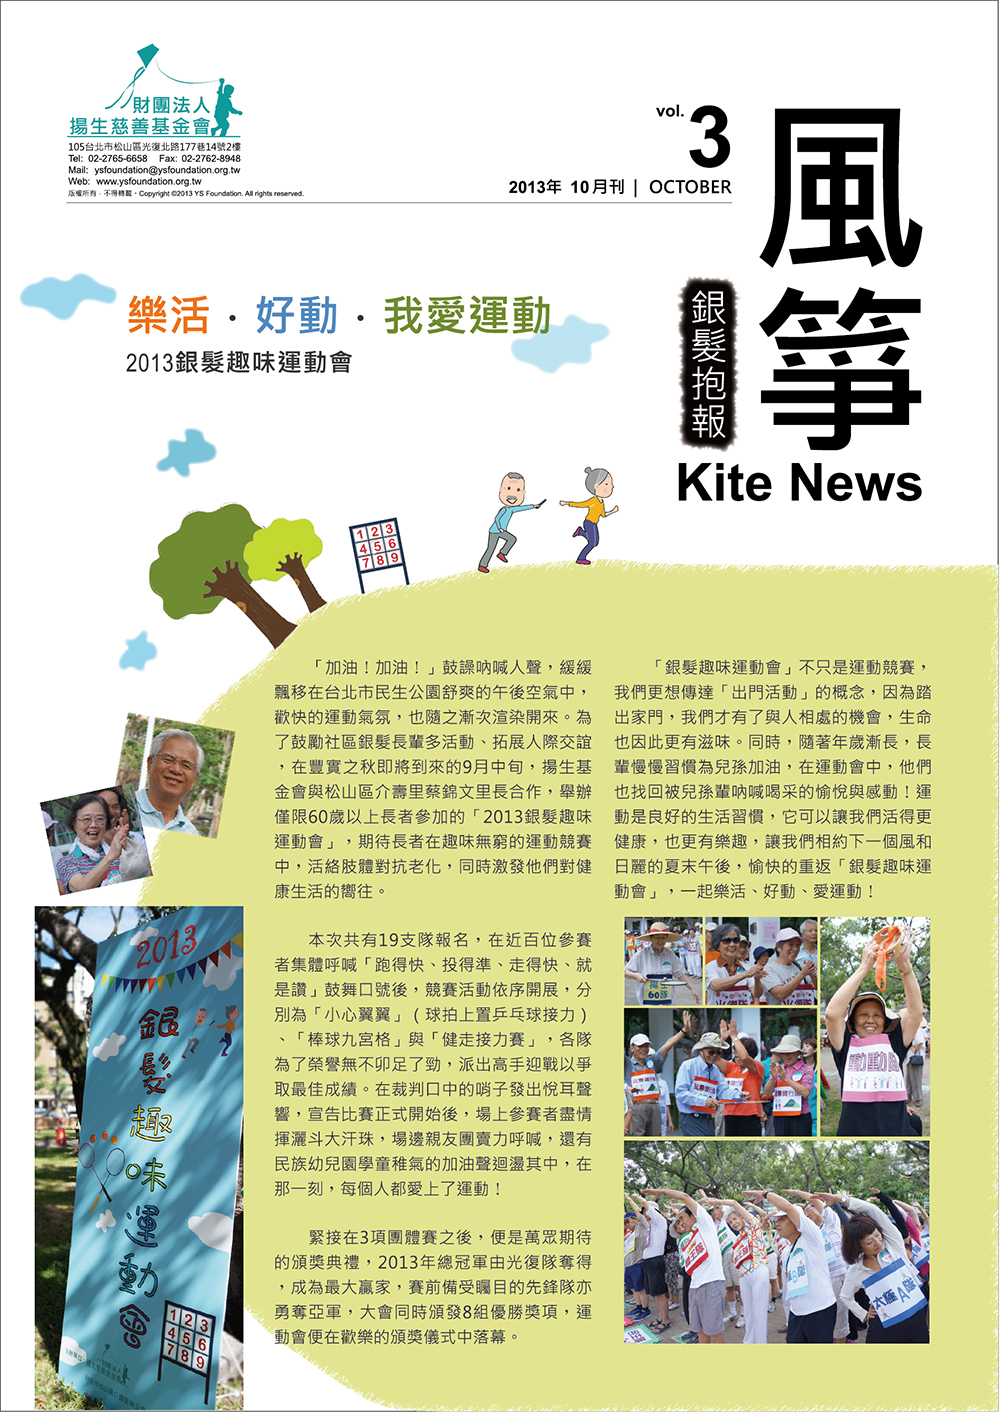 kite news_vol.3_1.jpg